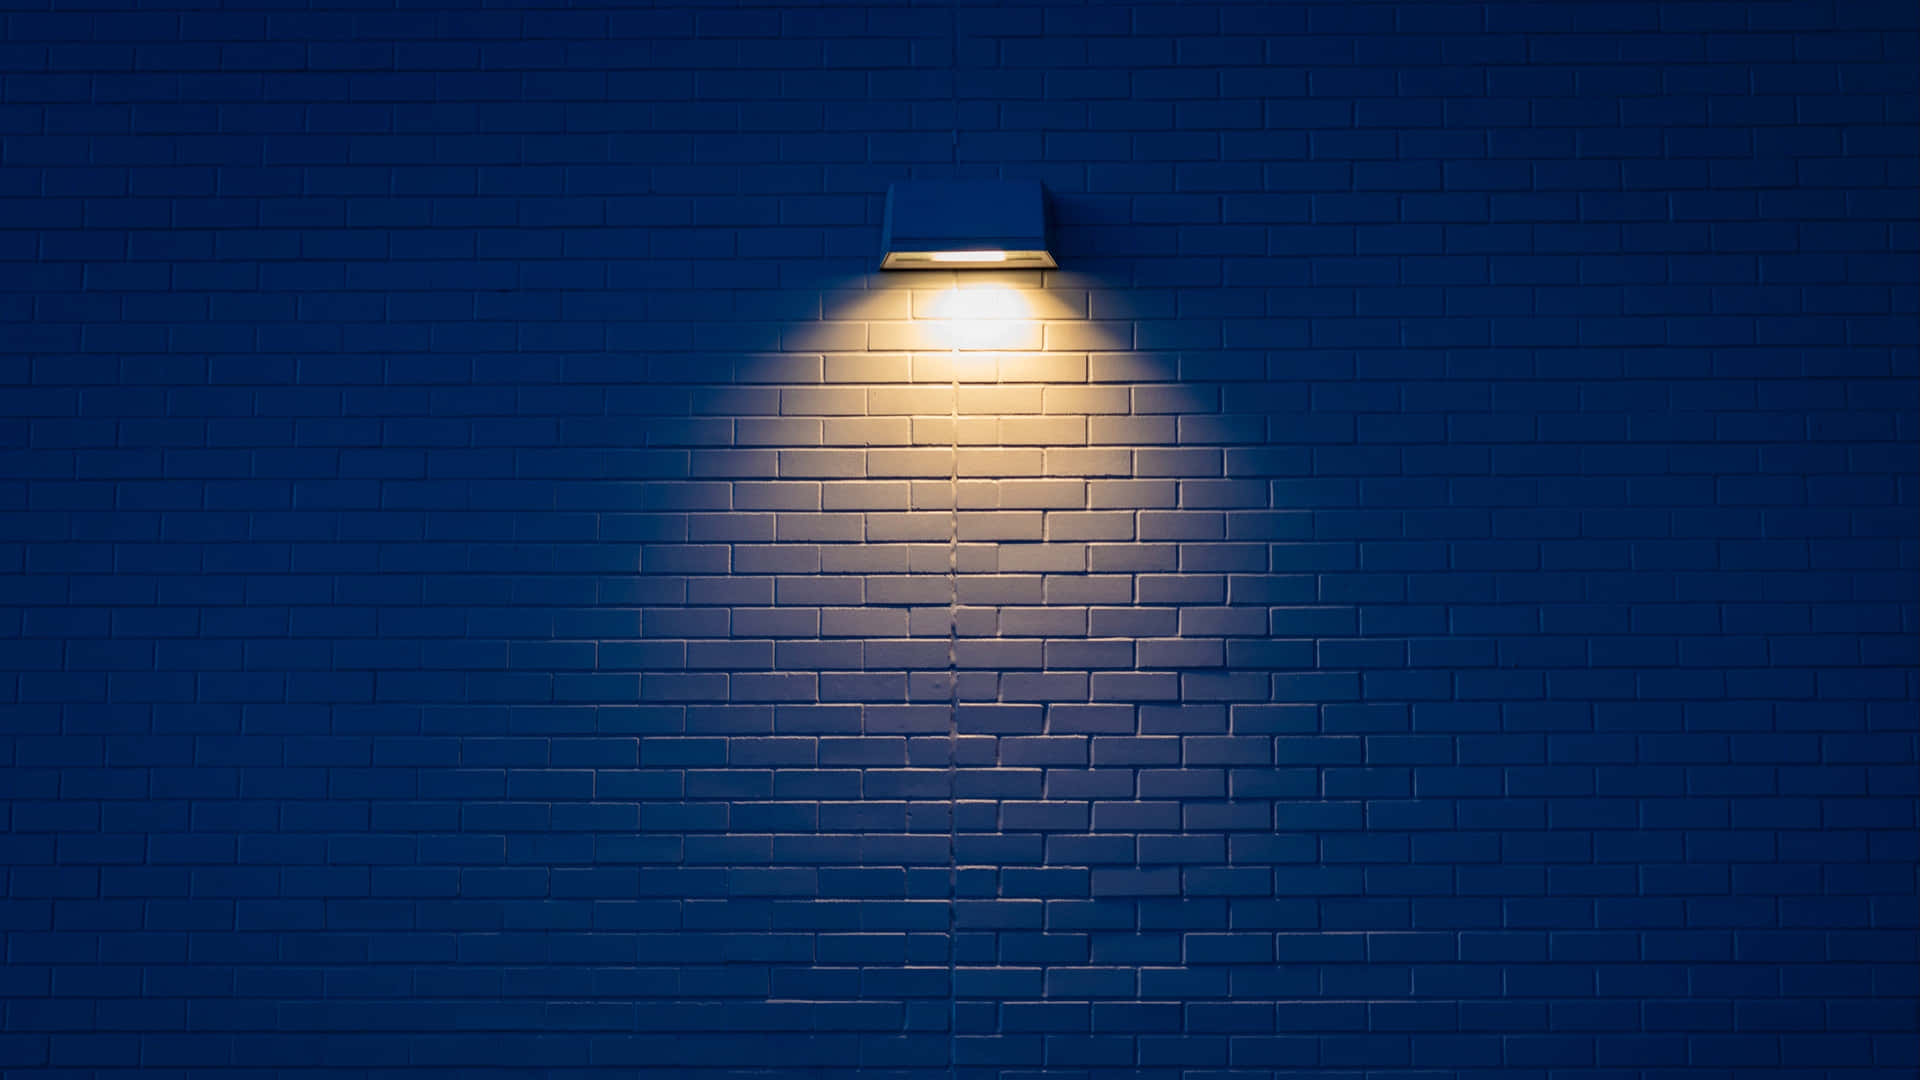 Wall Mounted Lamp Illuminating Bricks Wallpaper